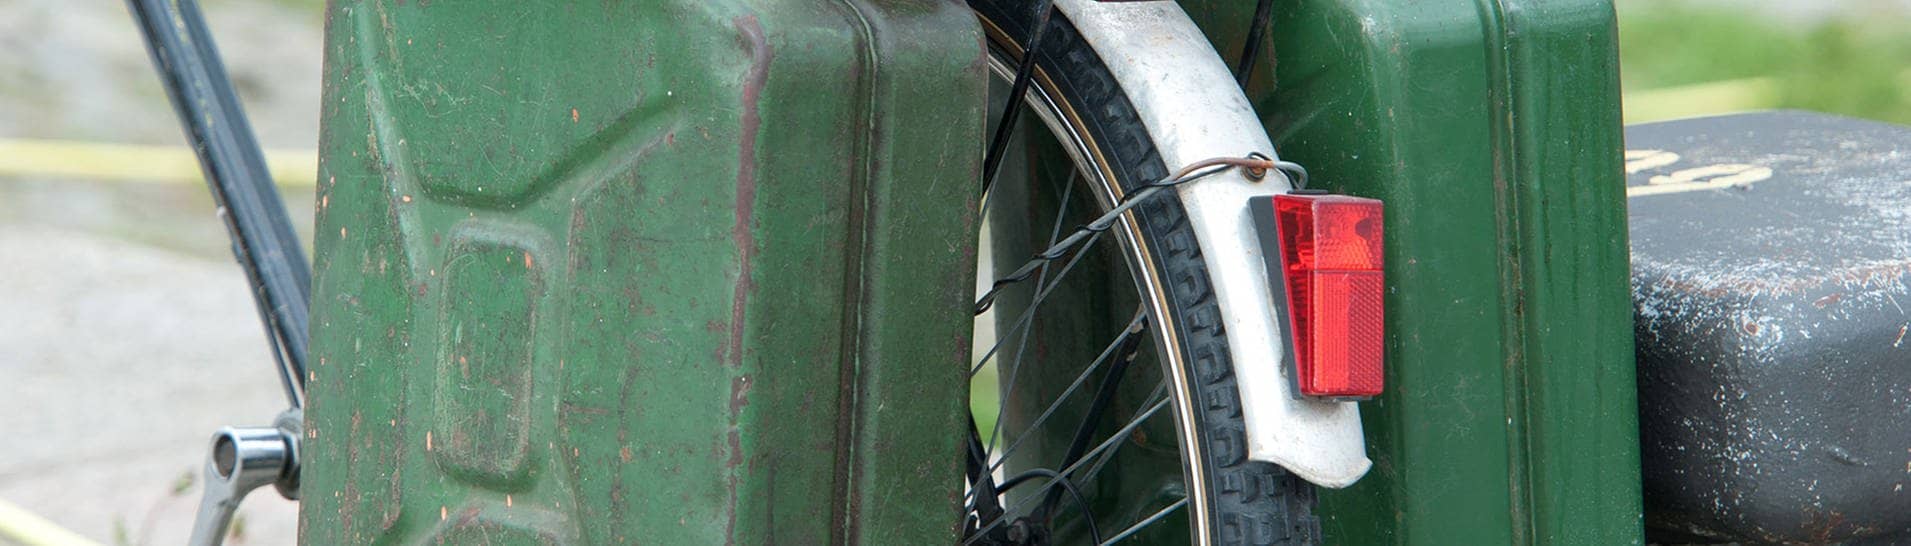 Zwei grüne Benzinkanister, die an einem Fahrradgepäckträger hängen. (Foto: dpa Bildfunk, Picture Alliance)